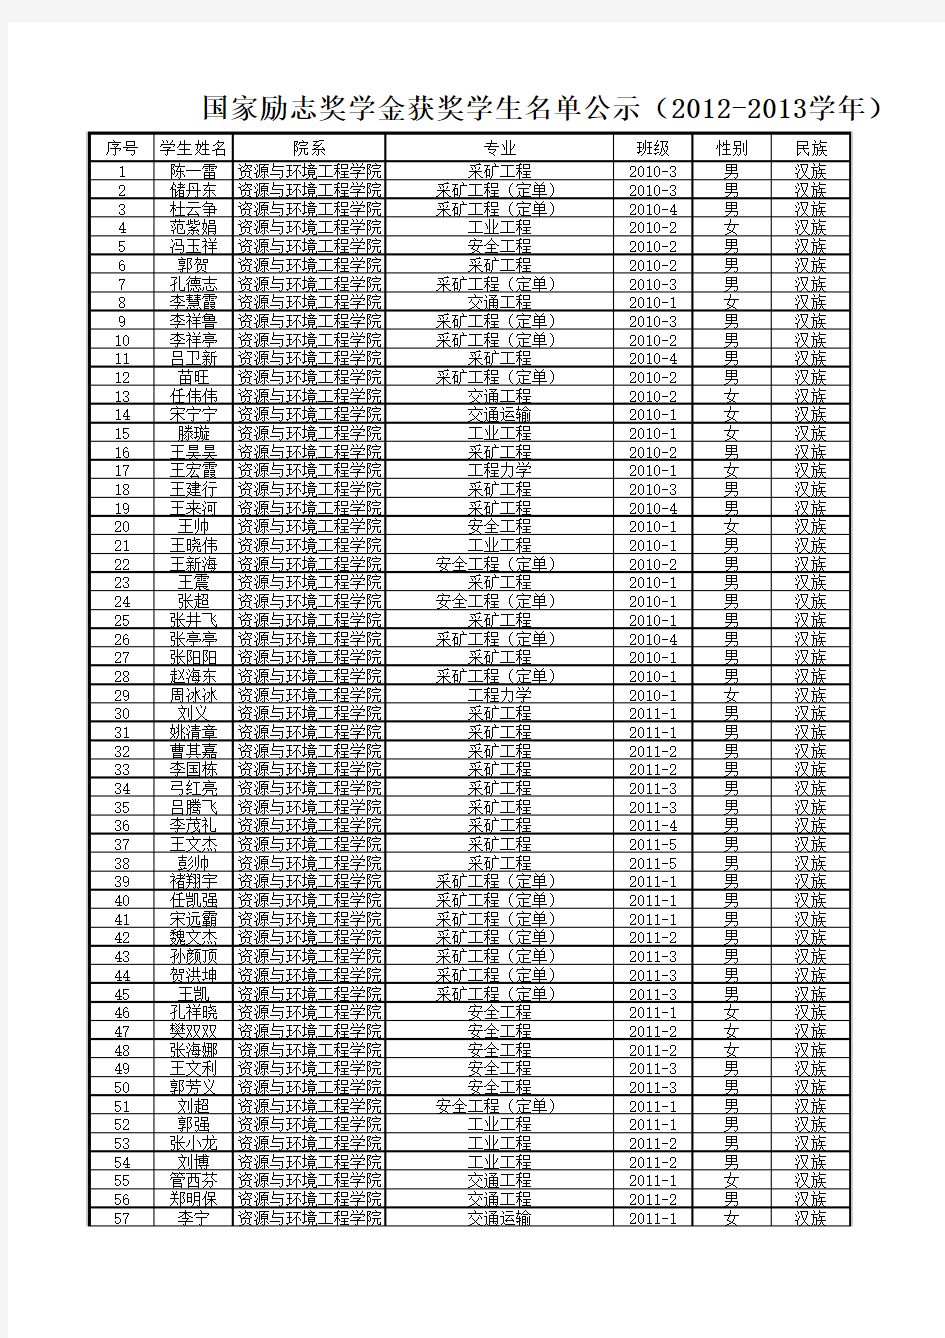 2012-2013学年国家励志奖学金初评学生名单公示